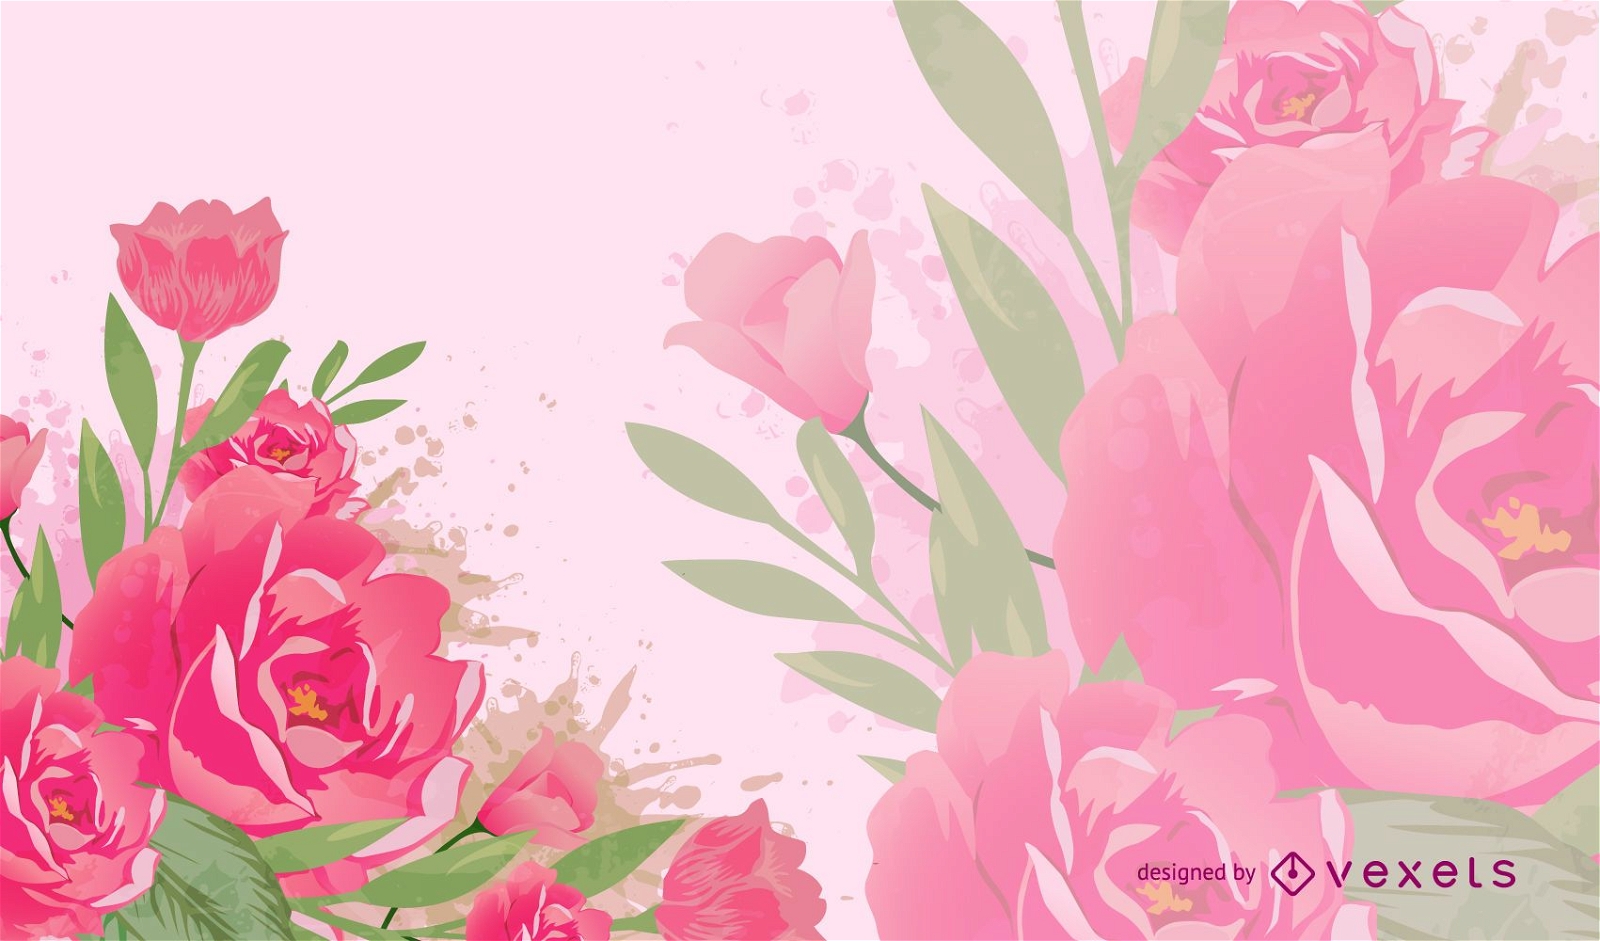 Pink flowers illustration backdrop